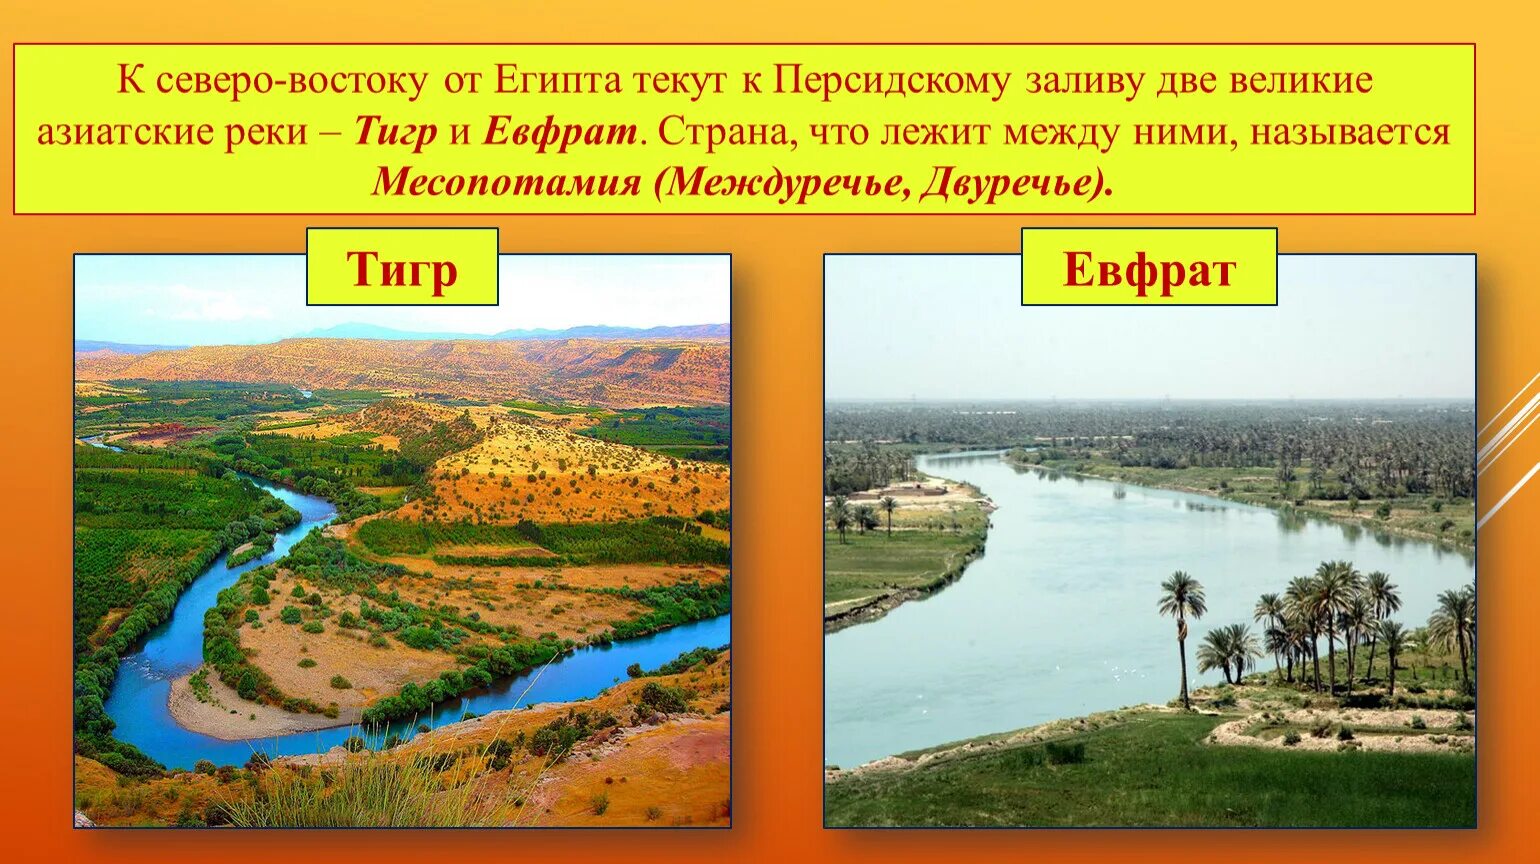 Река тигр в древнем мире. Устье рек тигра и Евфрата. Река тигр Месопотамия. Реки Месопотамии Ефрат.